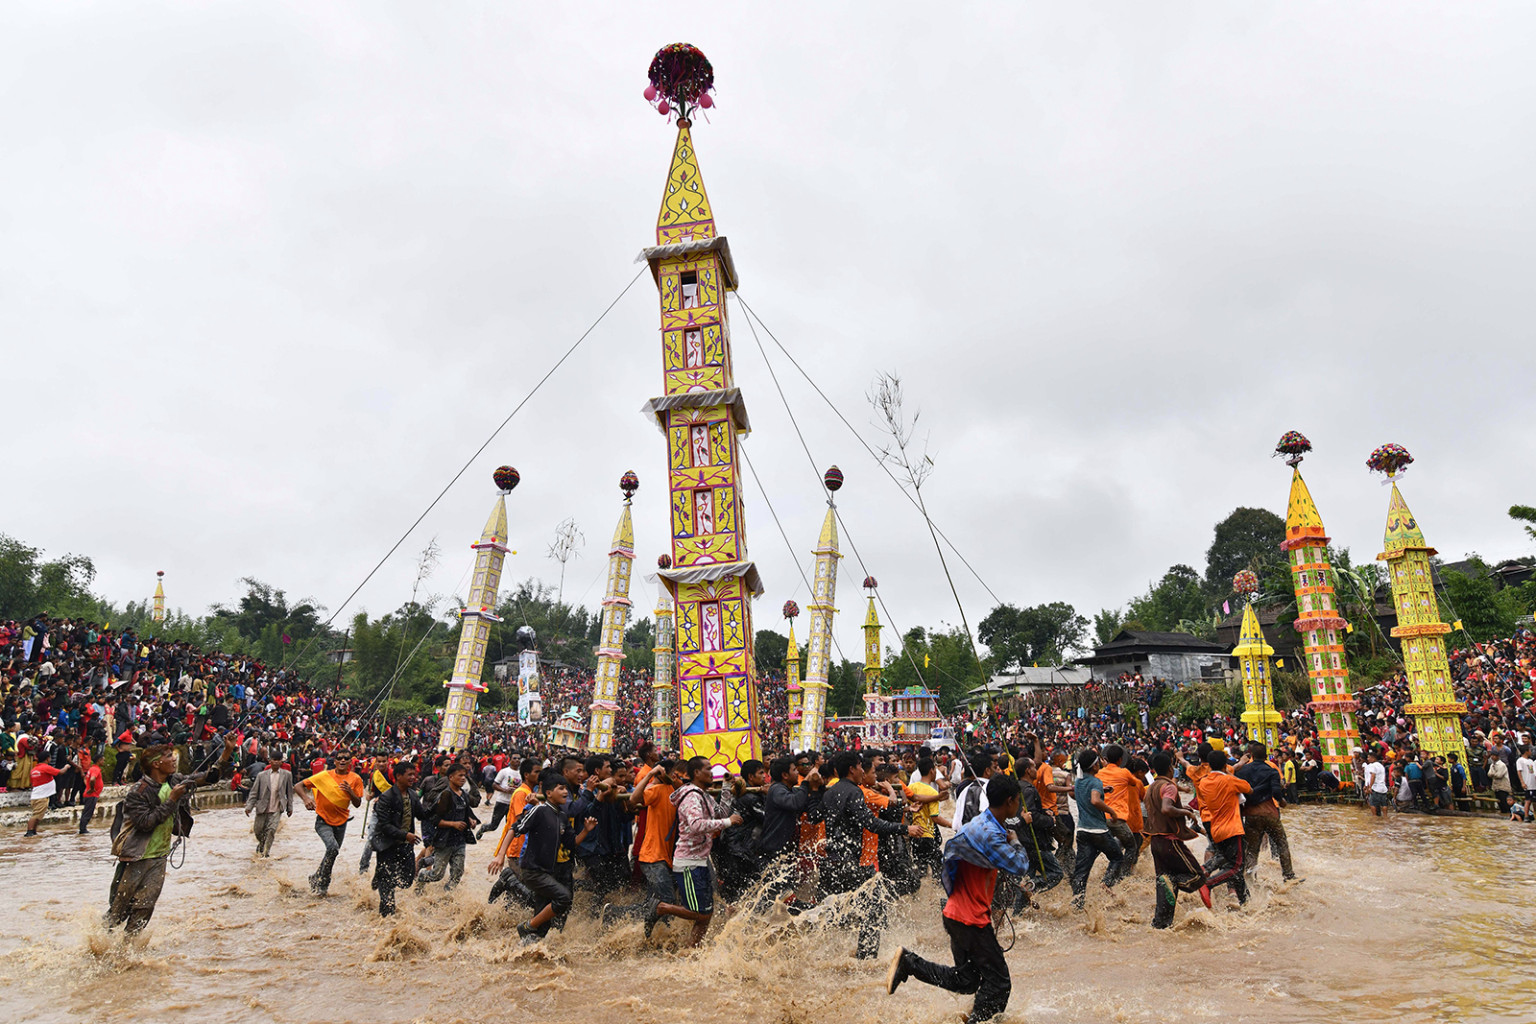 Bộ lạc mang theo nghi lễ truyền thống hoặc xe ngựa trong các sự kiện để đánh dấu lễ hội Behdienkhlam tại làng Tuber ở bang đông bắc Meghalaya, Ấn Độ, vào ngày 22 tháng 7.